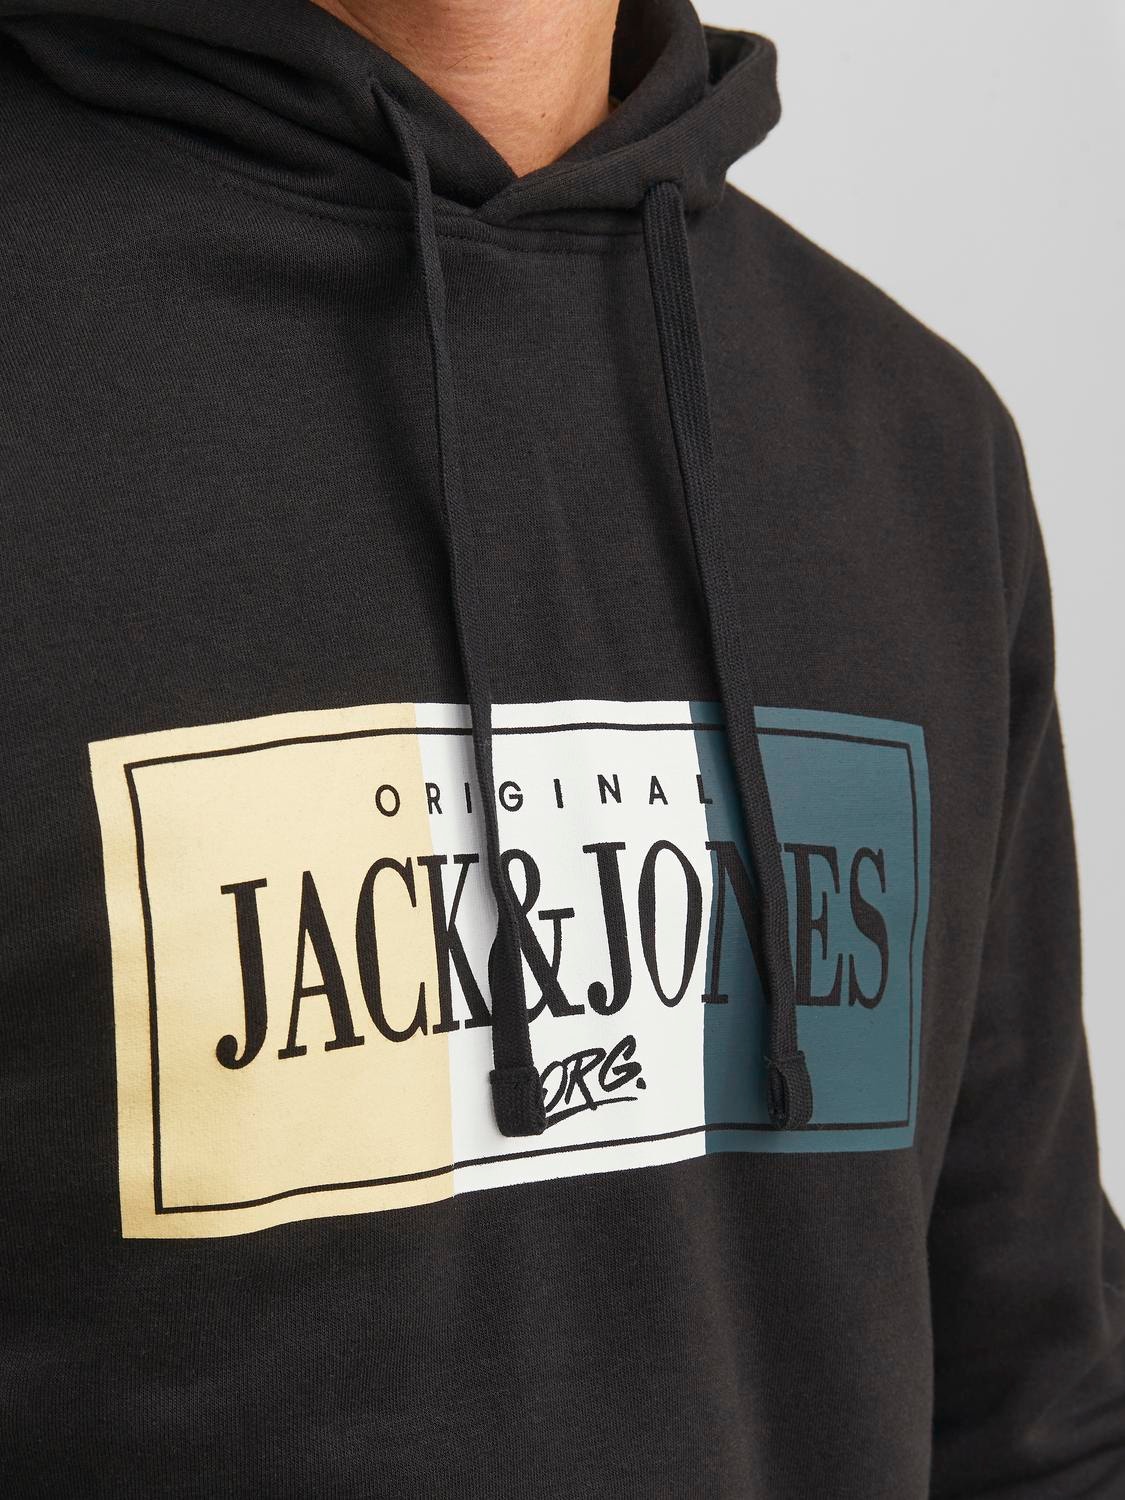 Jack & Jones Logotipas Megztinis su gobtuvu -Black - 12241776